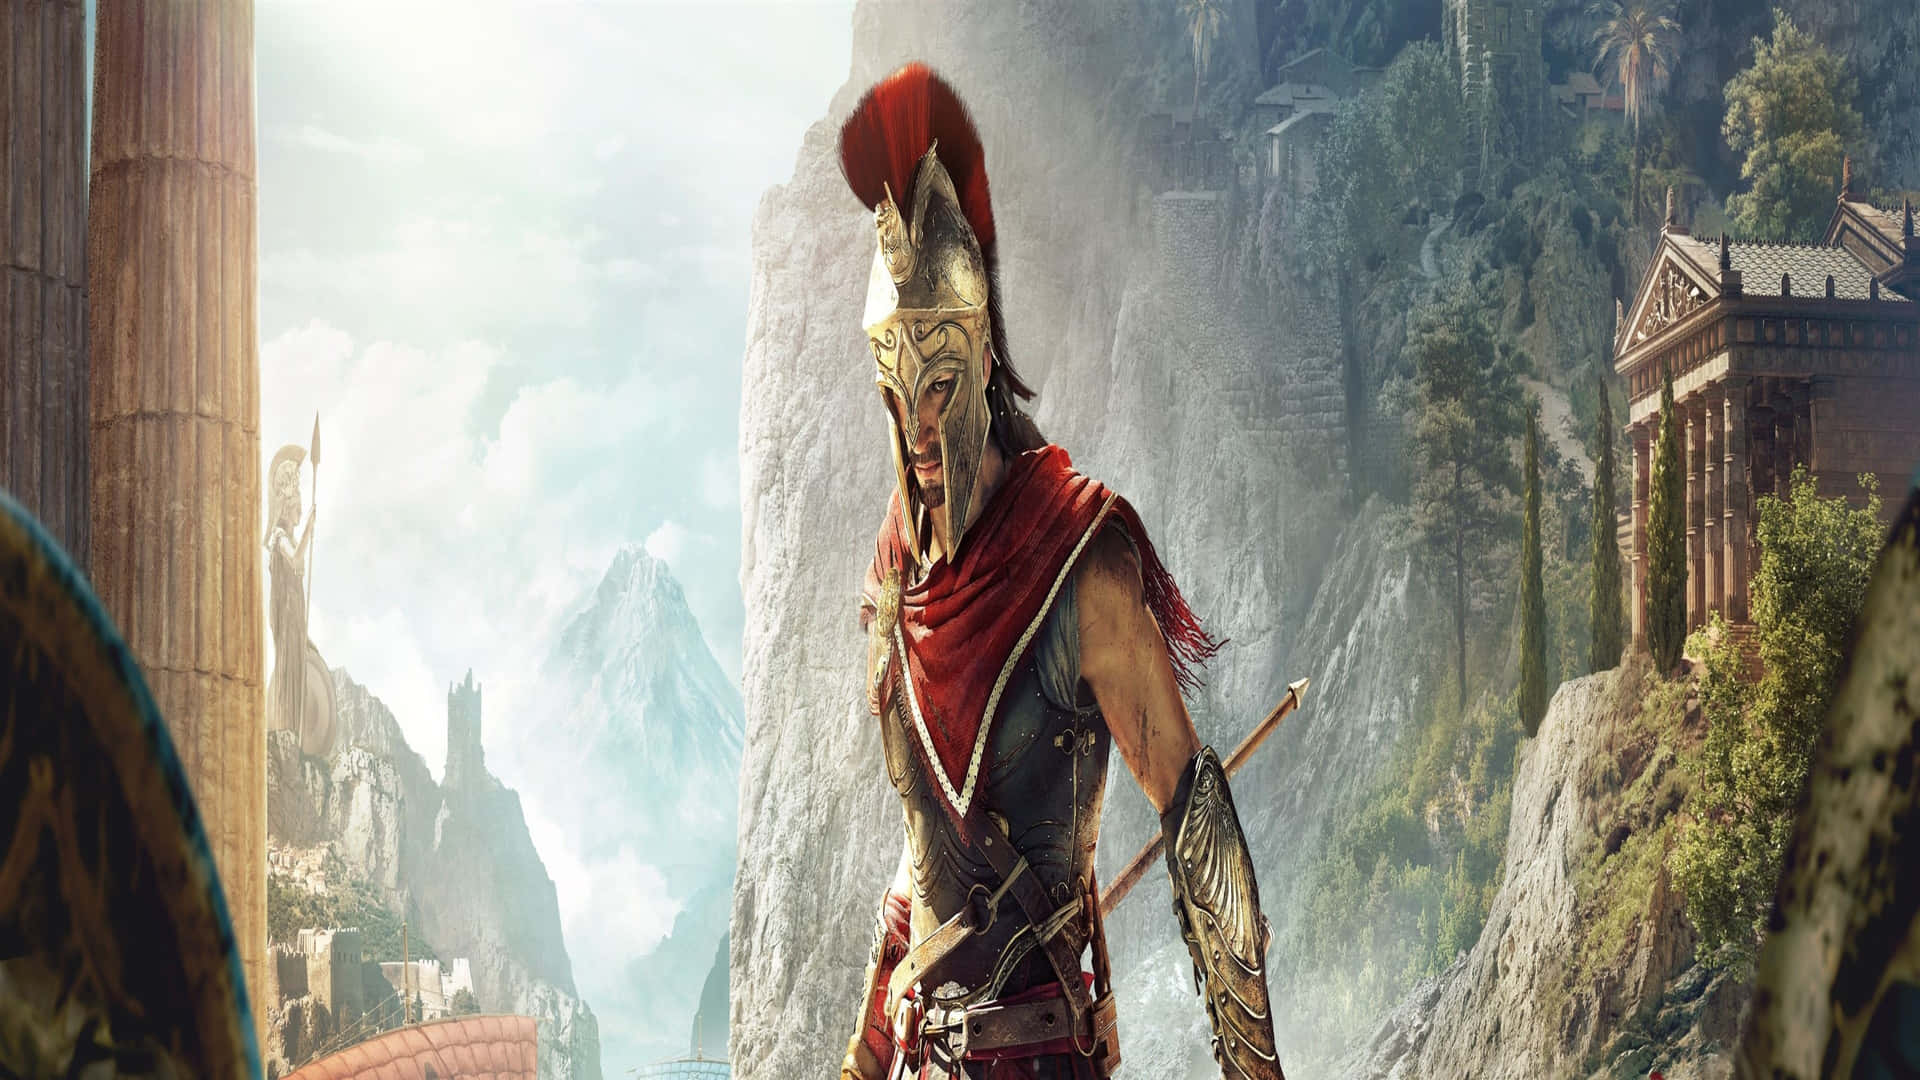 Upptäckepiska Äventyr Och Lösa Antika Tvister I 4k Assassin's Creed Odyssey.